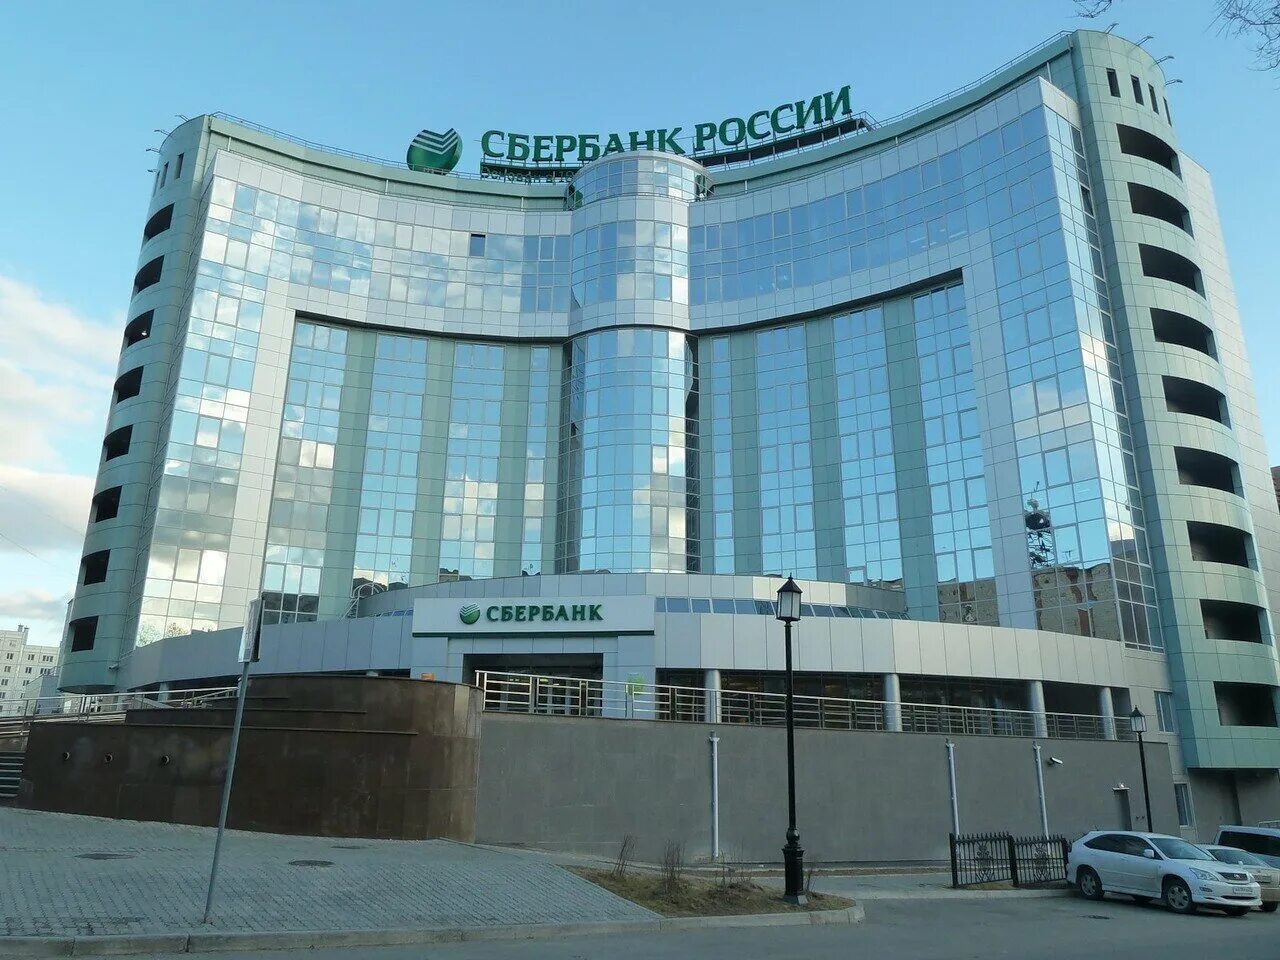 Главный офис в г. Сбер первый Вавилова 19. Сбер головной офис Москва. Сбер главный офис Москва. Сбербанк здание.